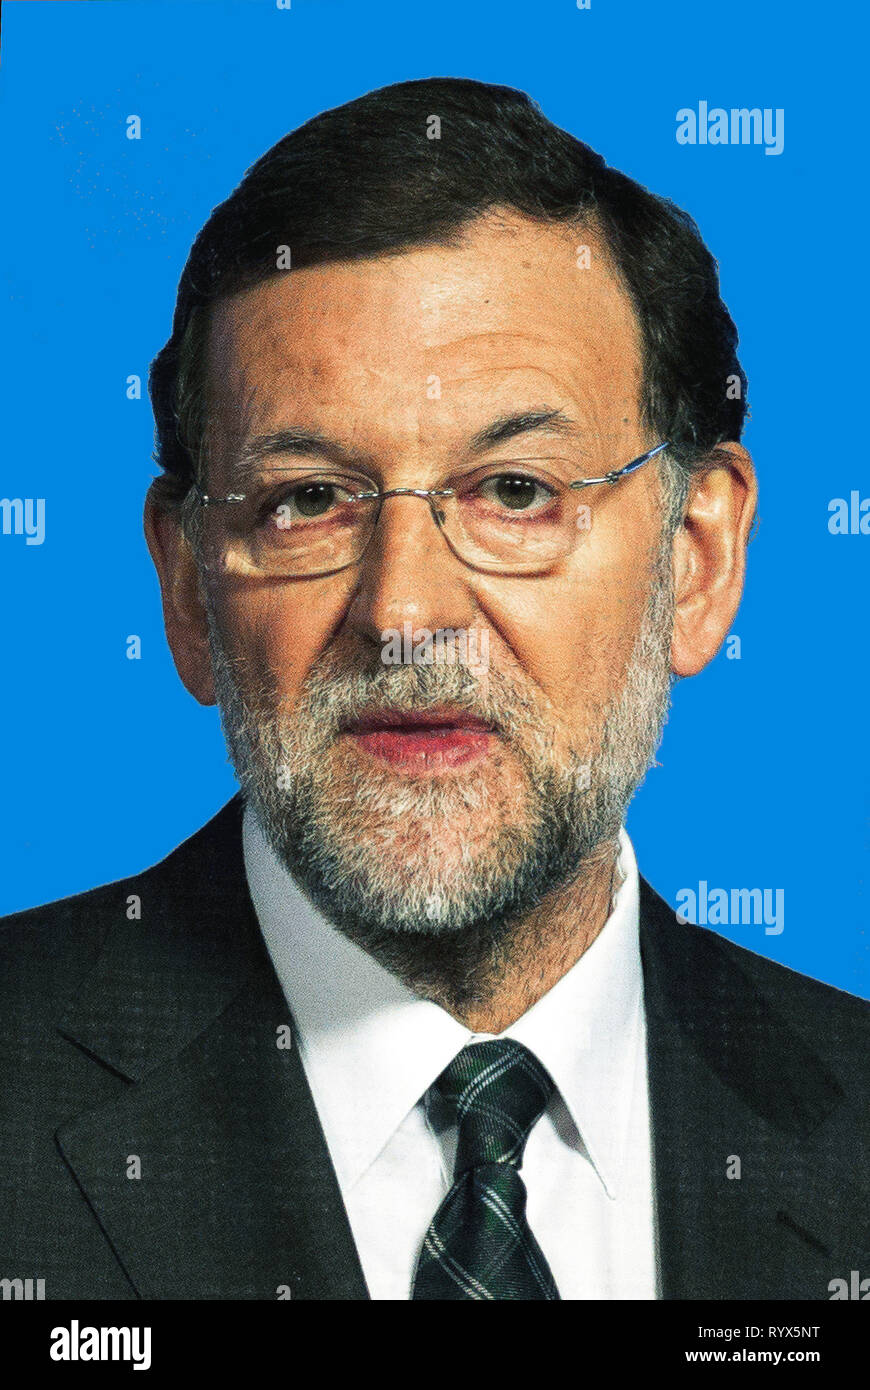 Mariano Rajoy - * 27.03.1955 : homme politique espagnol du Parti populaire et son Premier ministre de 2011 à 2018 - Espagne. Banque D'Images